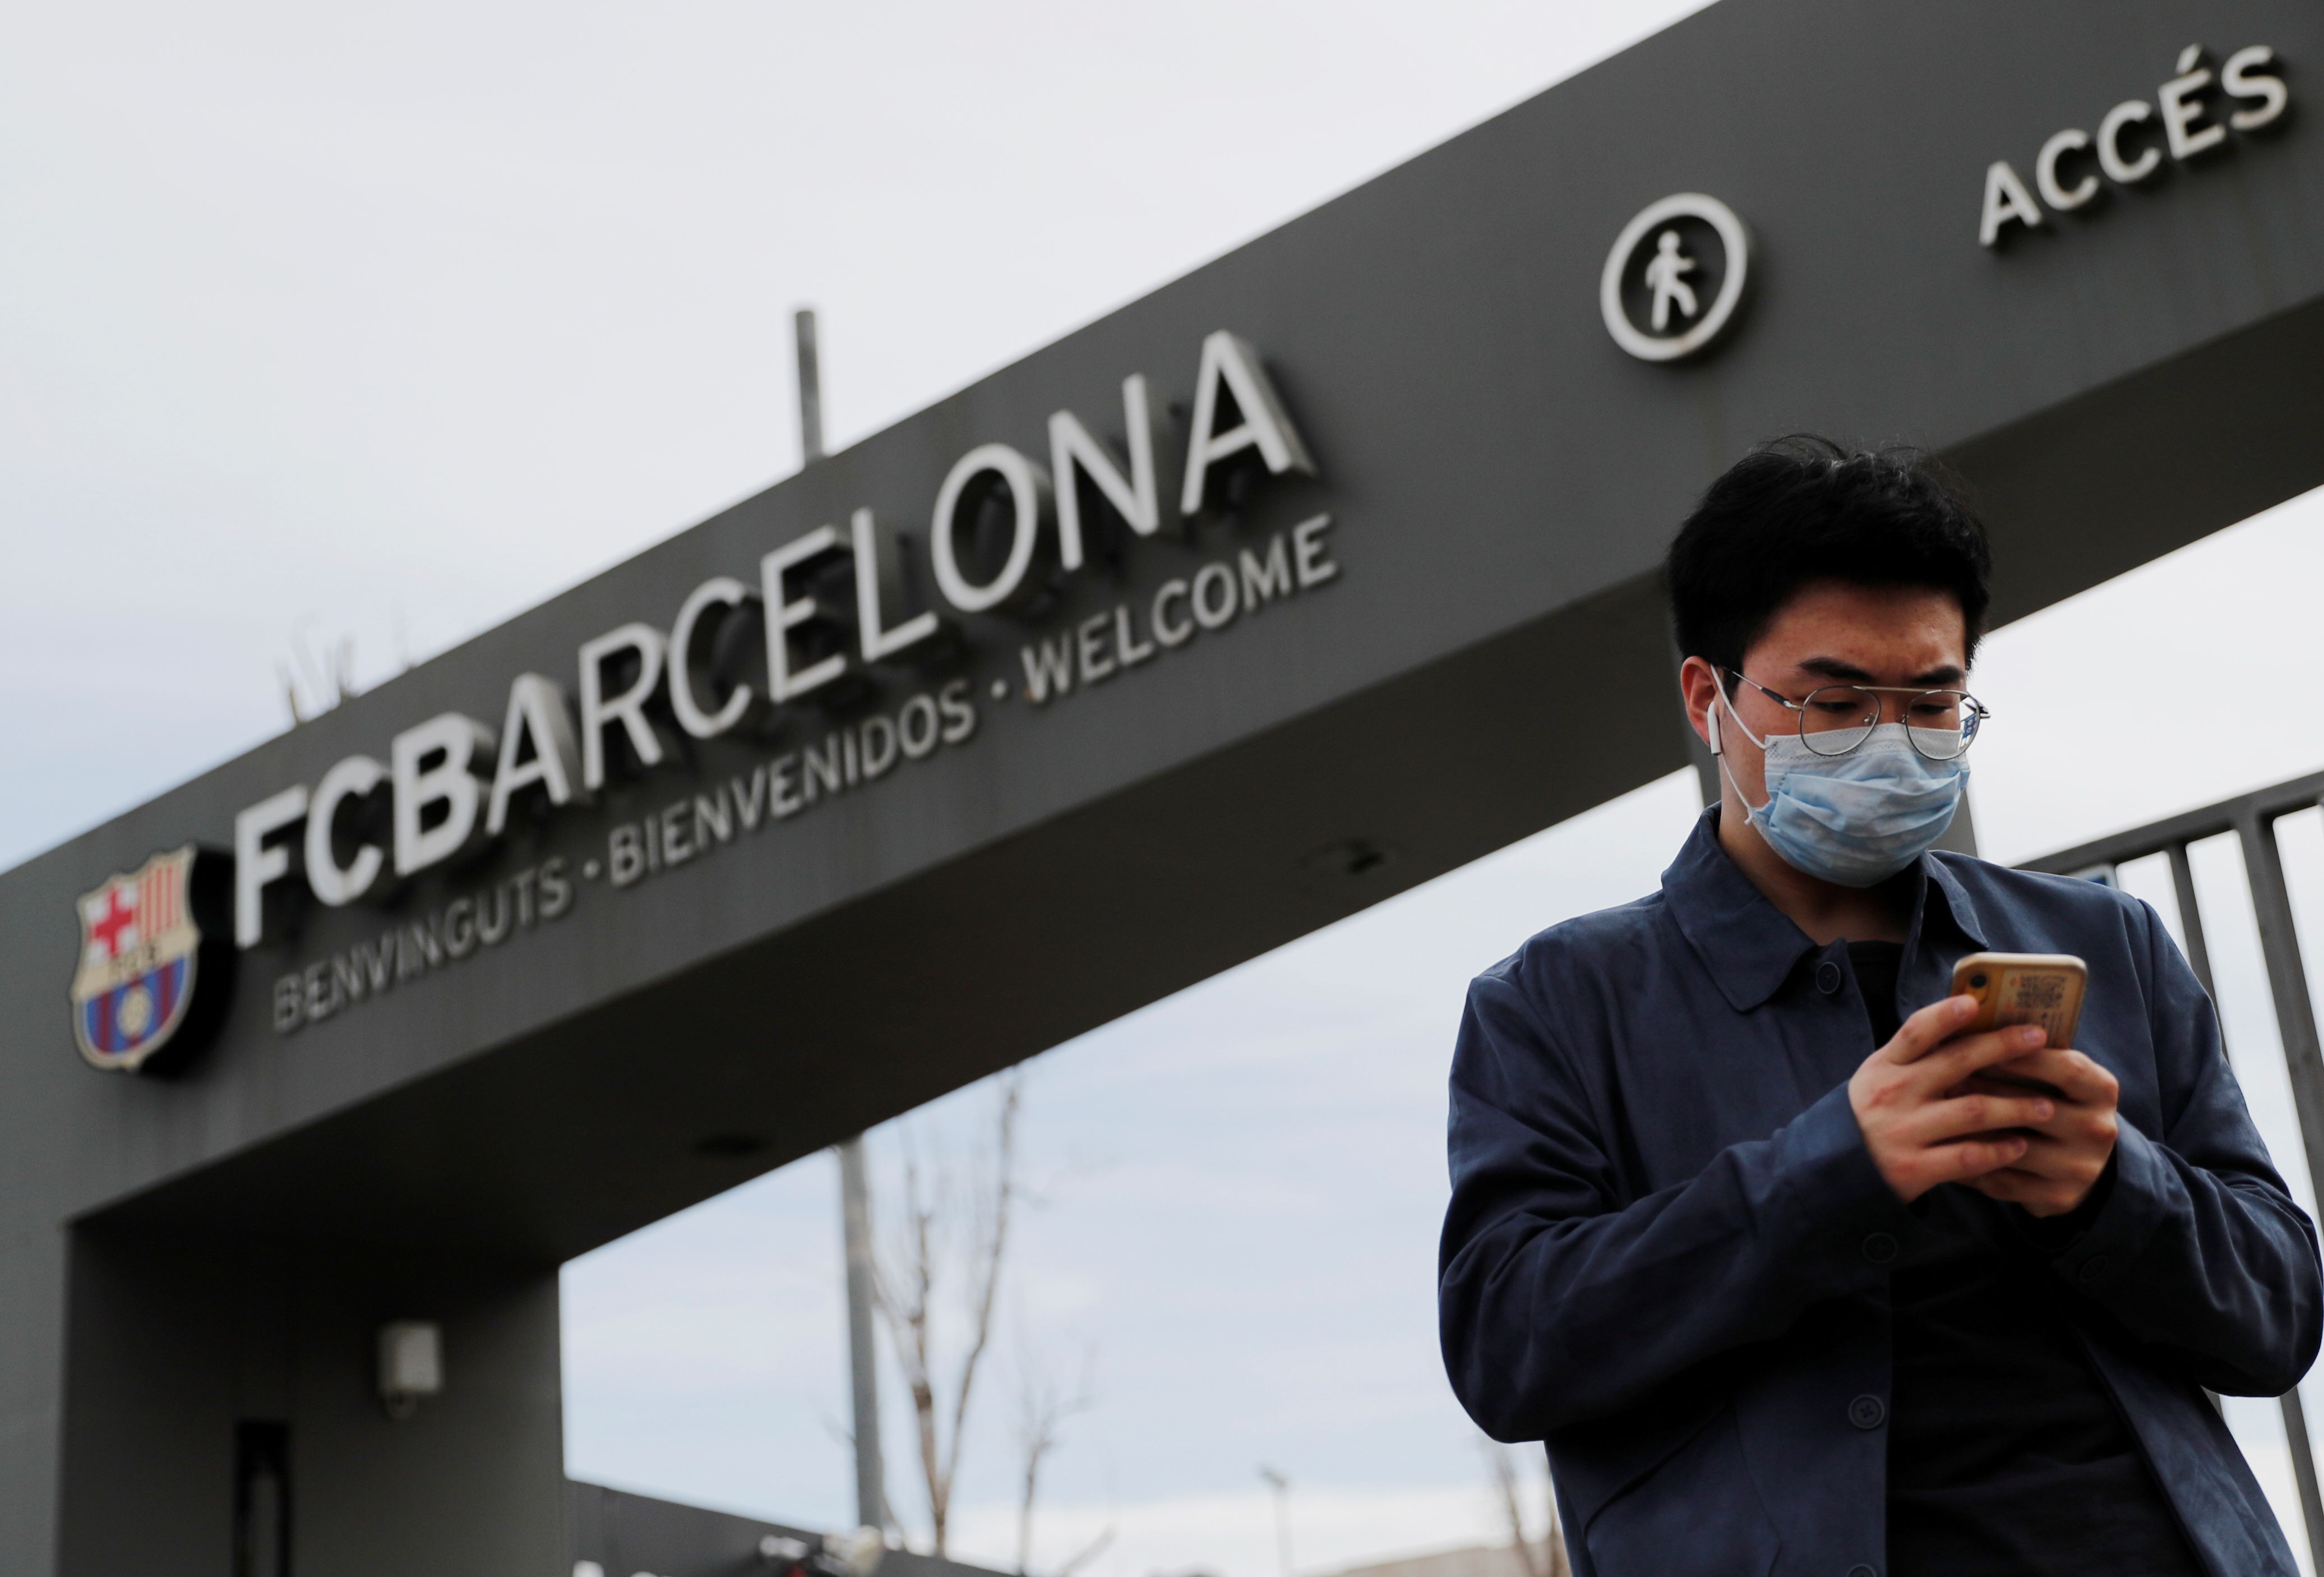 El club catalán busca ayudar a frenar la pandemia (REUTERS)